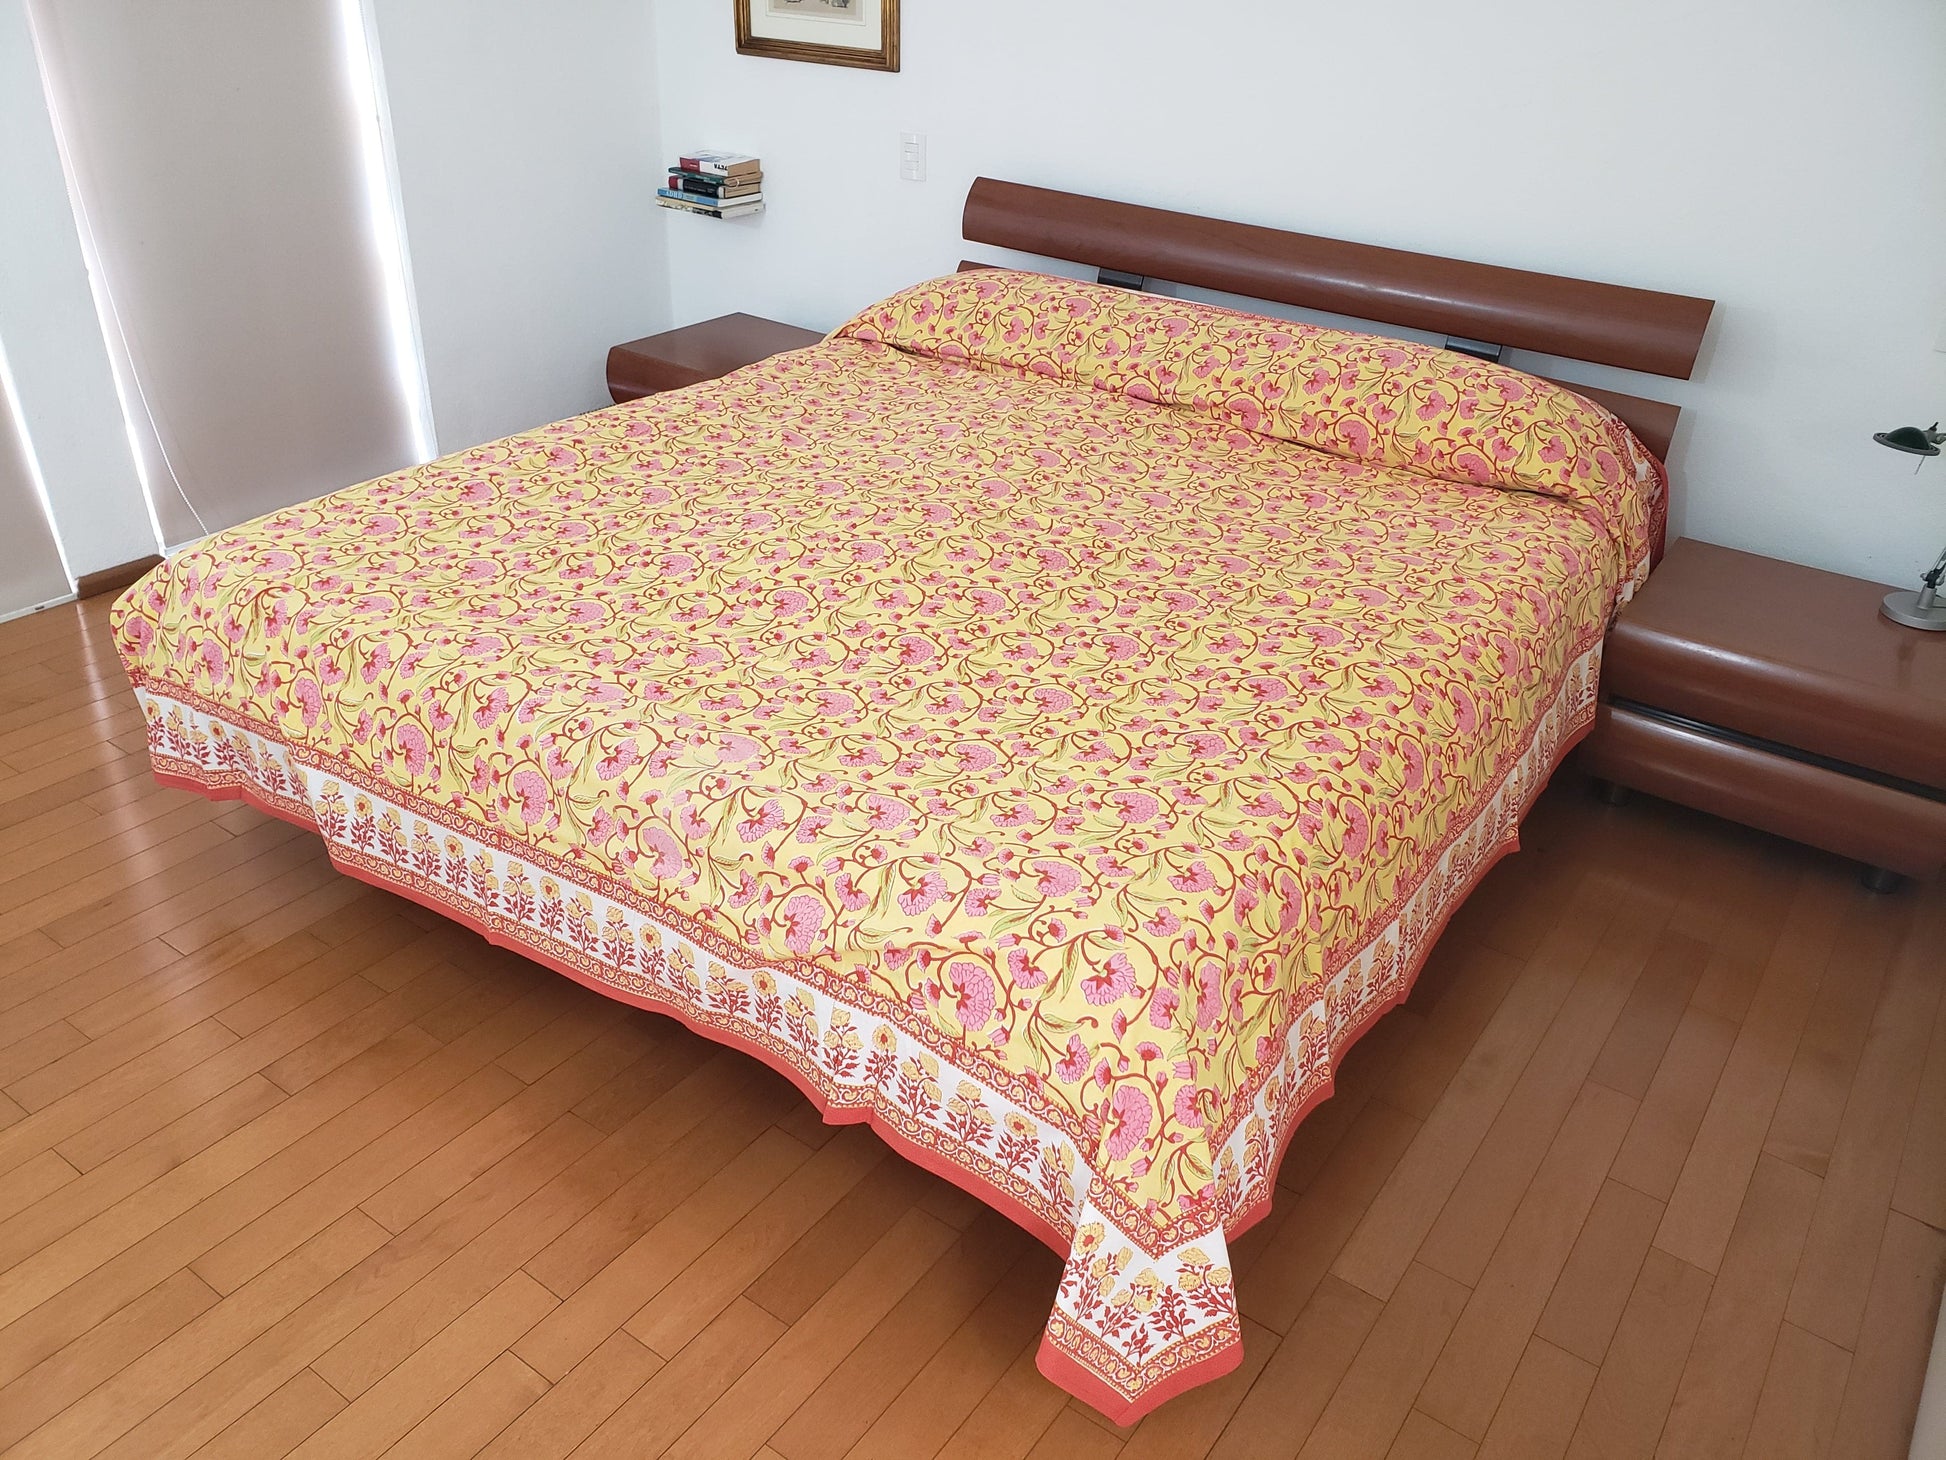 Sobrecama 100% algodón estampado a mano, base color amarilla con flores rosas y tallos rojos. Hecho en la India.